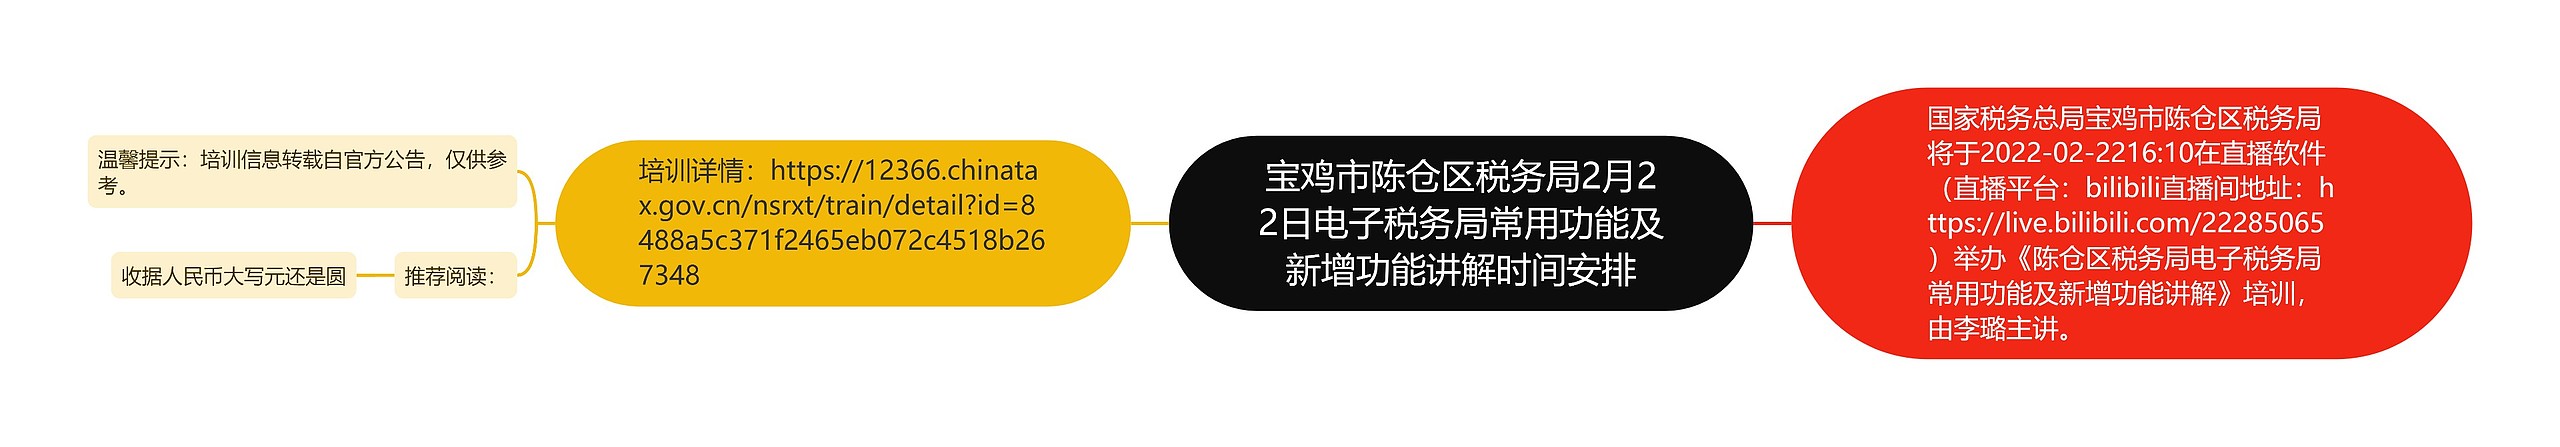 宝鸡市陈仓区税务局2月22日电子税务局常用功能及新增功能讲解时间安排